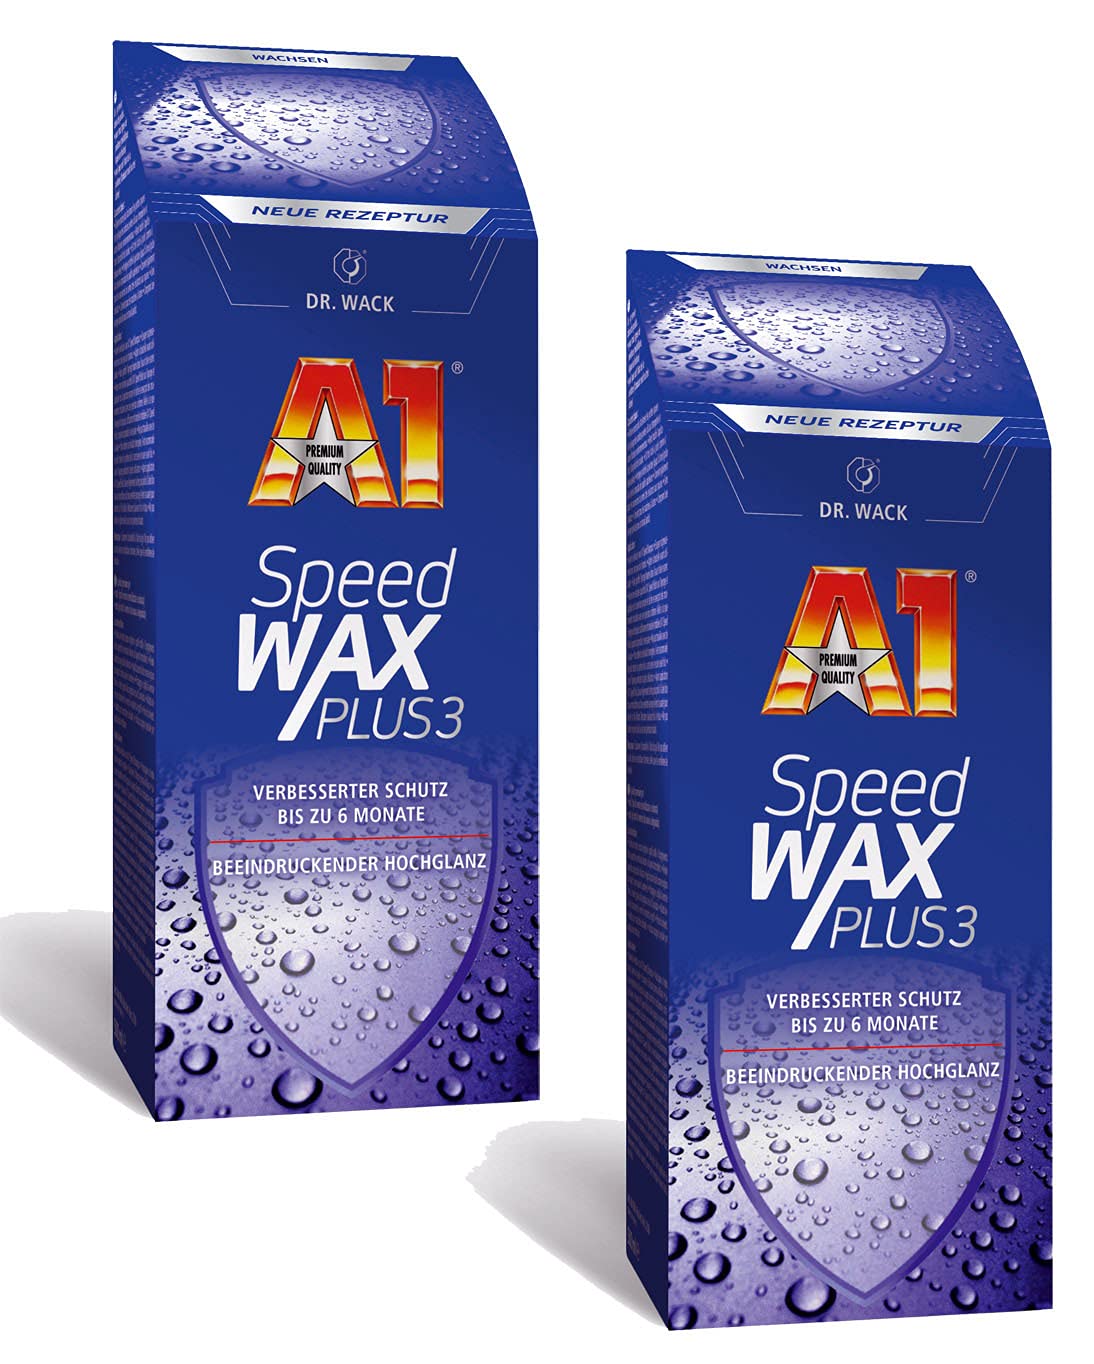 ILODA 2X 500ml Dr. Wack A1 Speed Wax Plus 3, Auto-Hartwachs, Auto-Wachs, Lackschutz, Lackversiegelung, Carnauba-Wachs mit extrem langanhaltenden Wasser-Abperl-Effekt für alle Lacke von ILODA